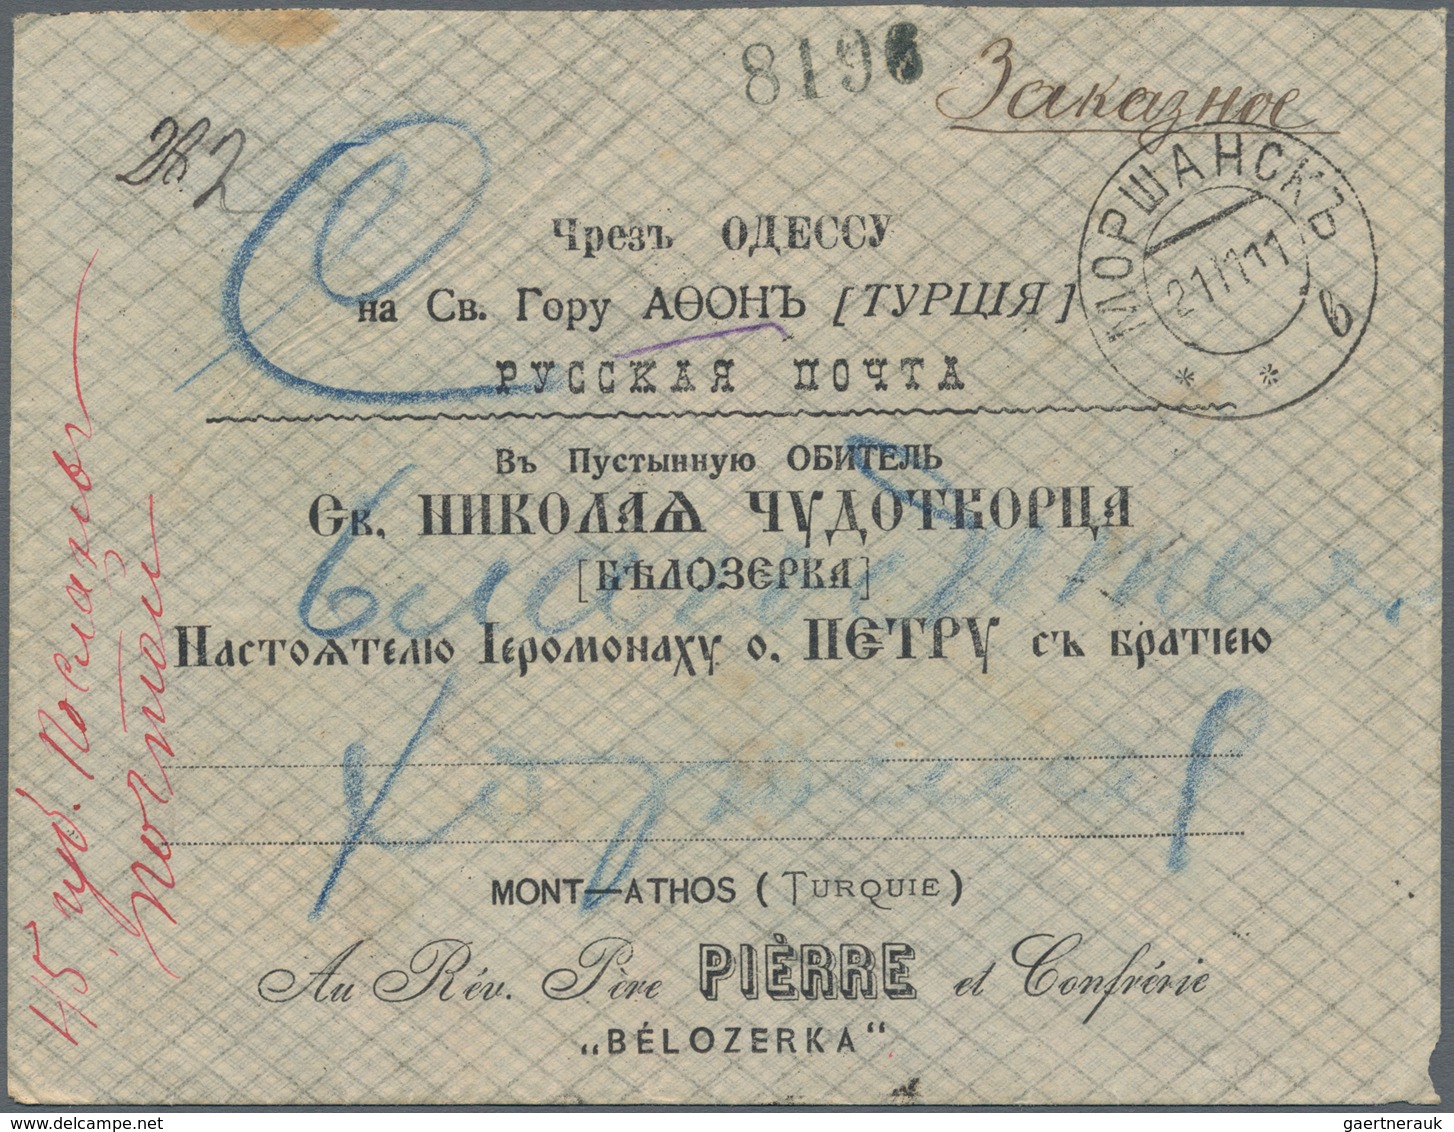 Russische Post In Der Levante - Handelsgesellschaft: 1911, Registered Letter From Morshansk Via Odes - Levant